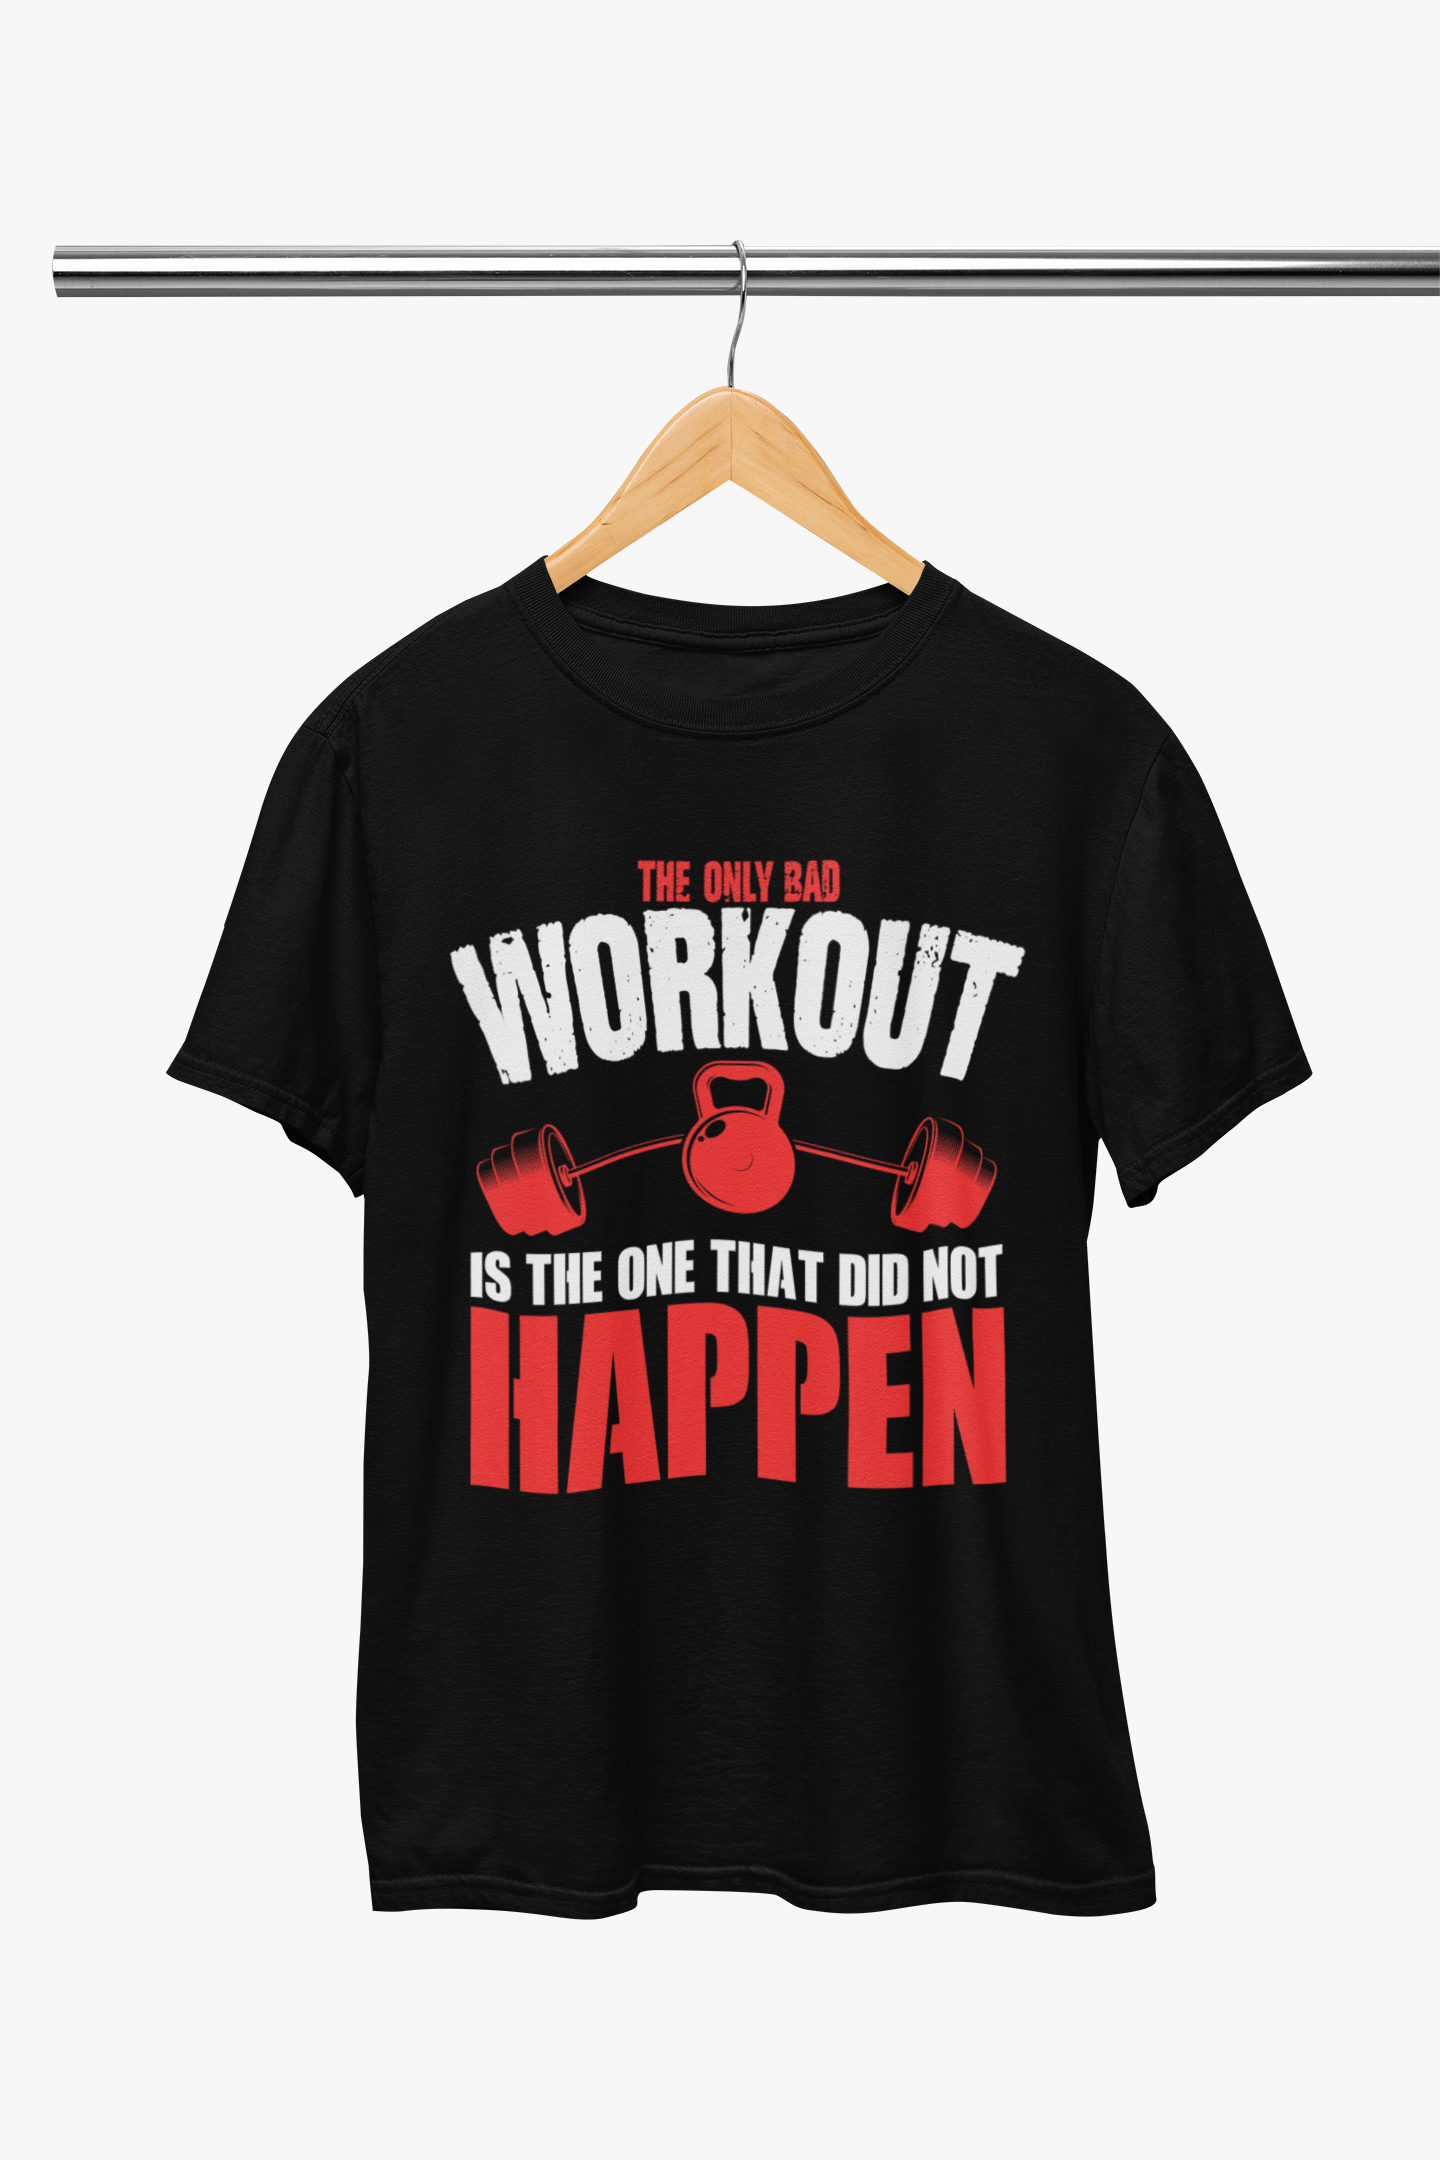 Every Workout Matters T-Shirt